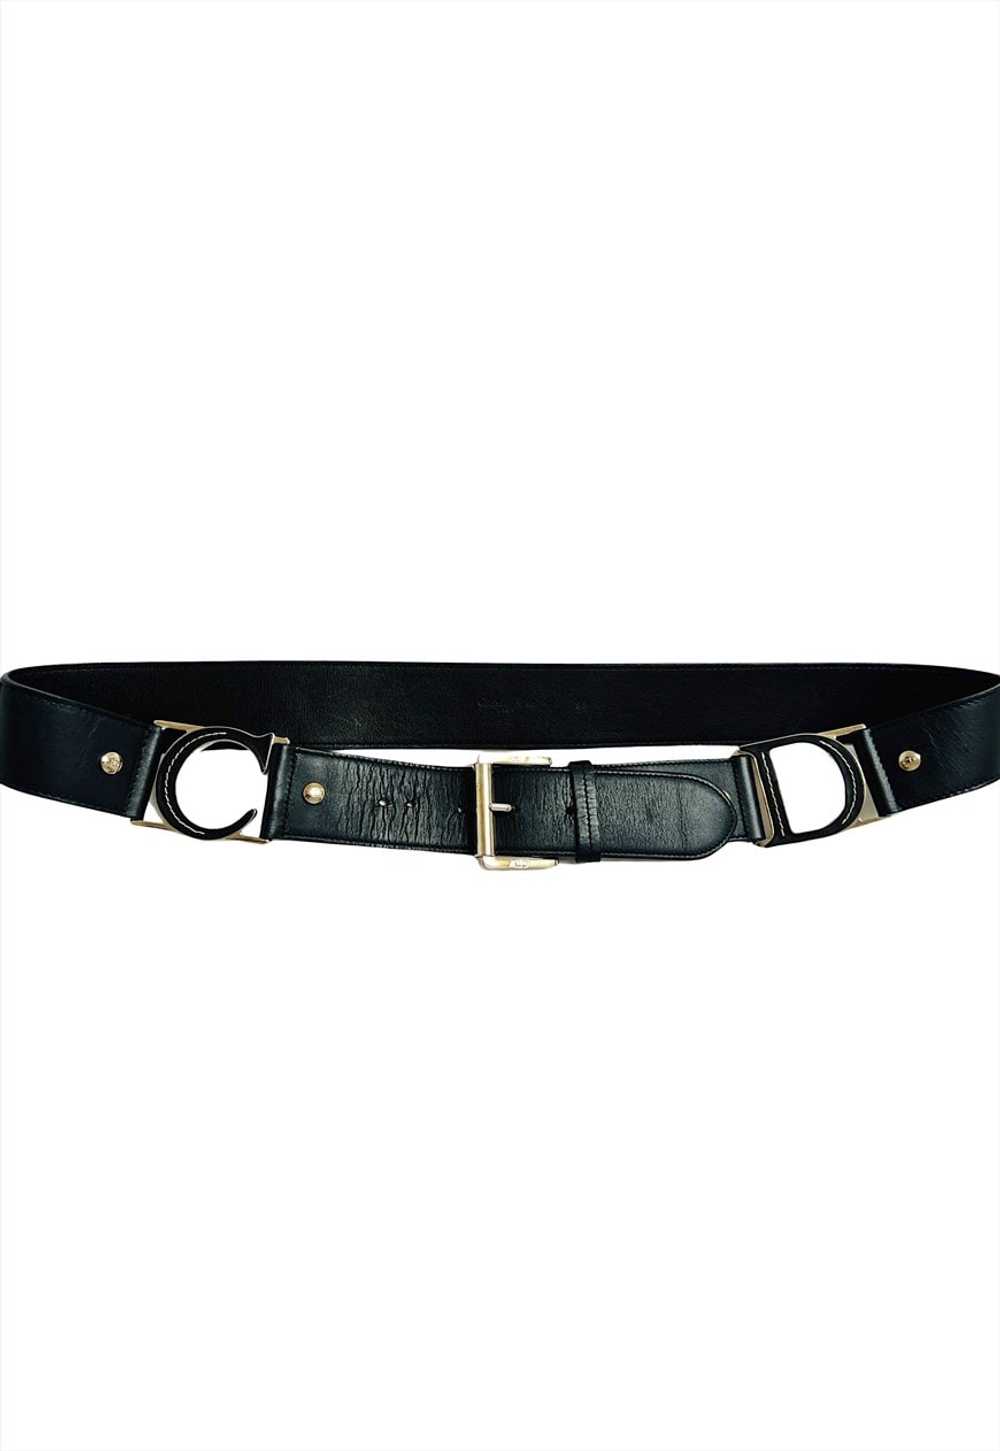 Christian Dior Belt Black Leather C D Buckle Logo… - image 1